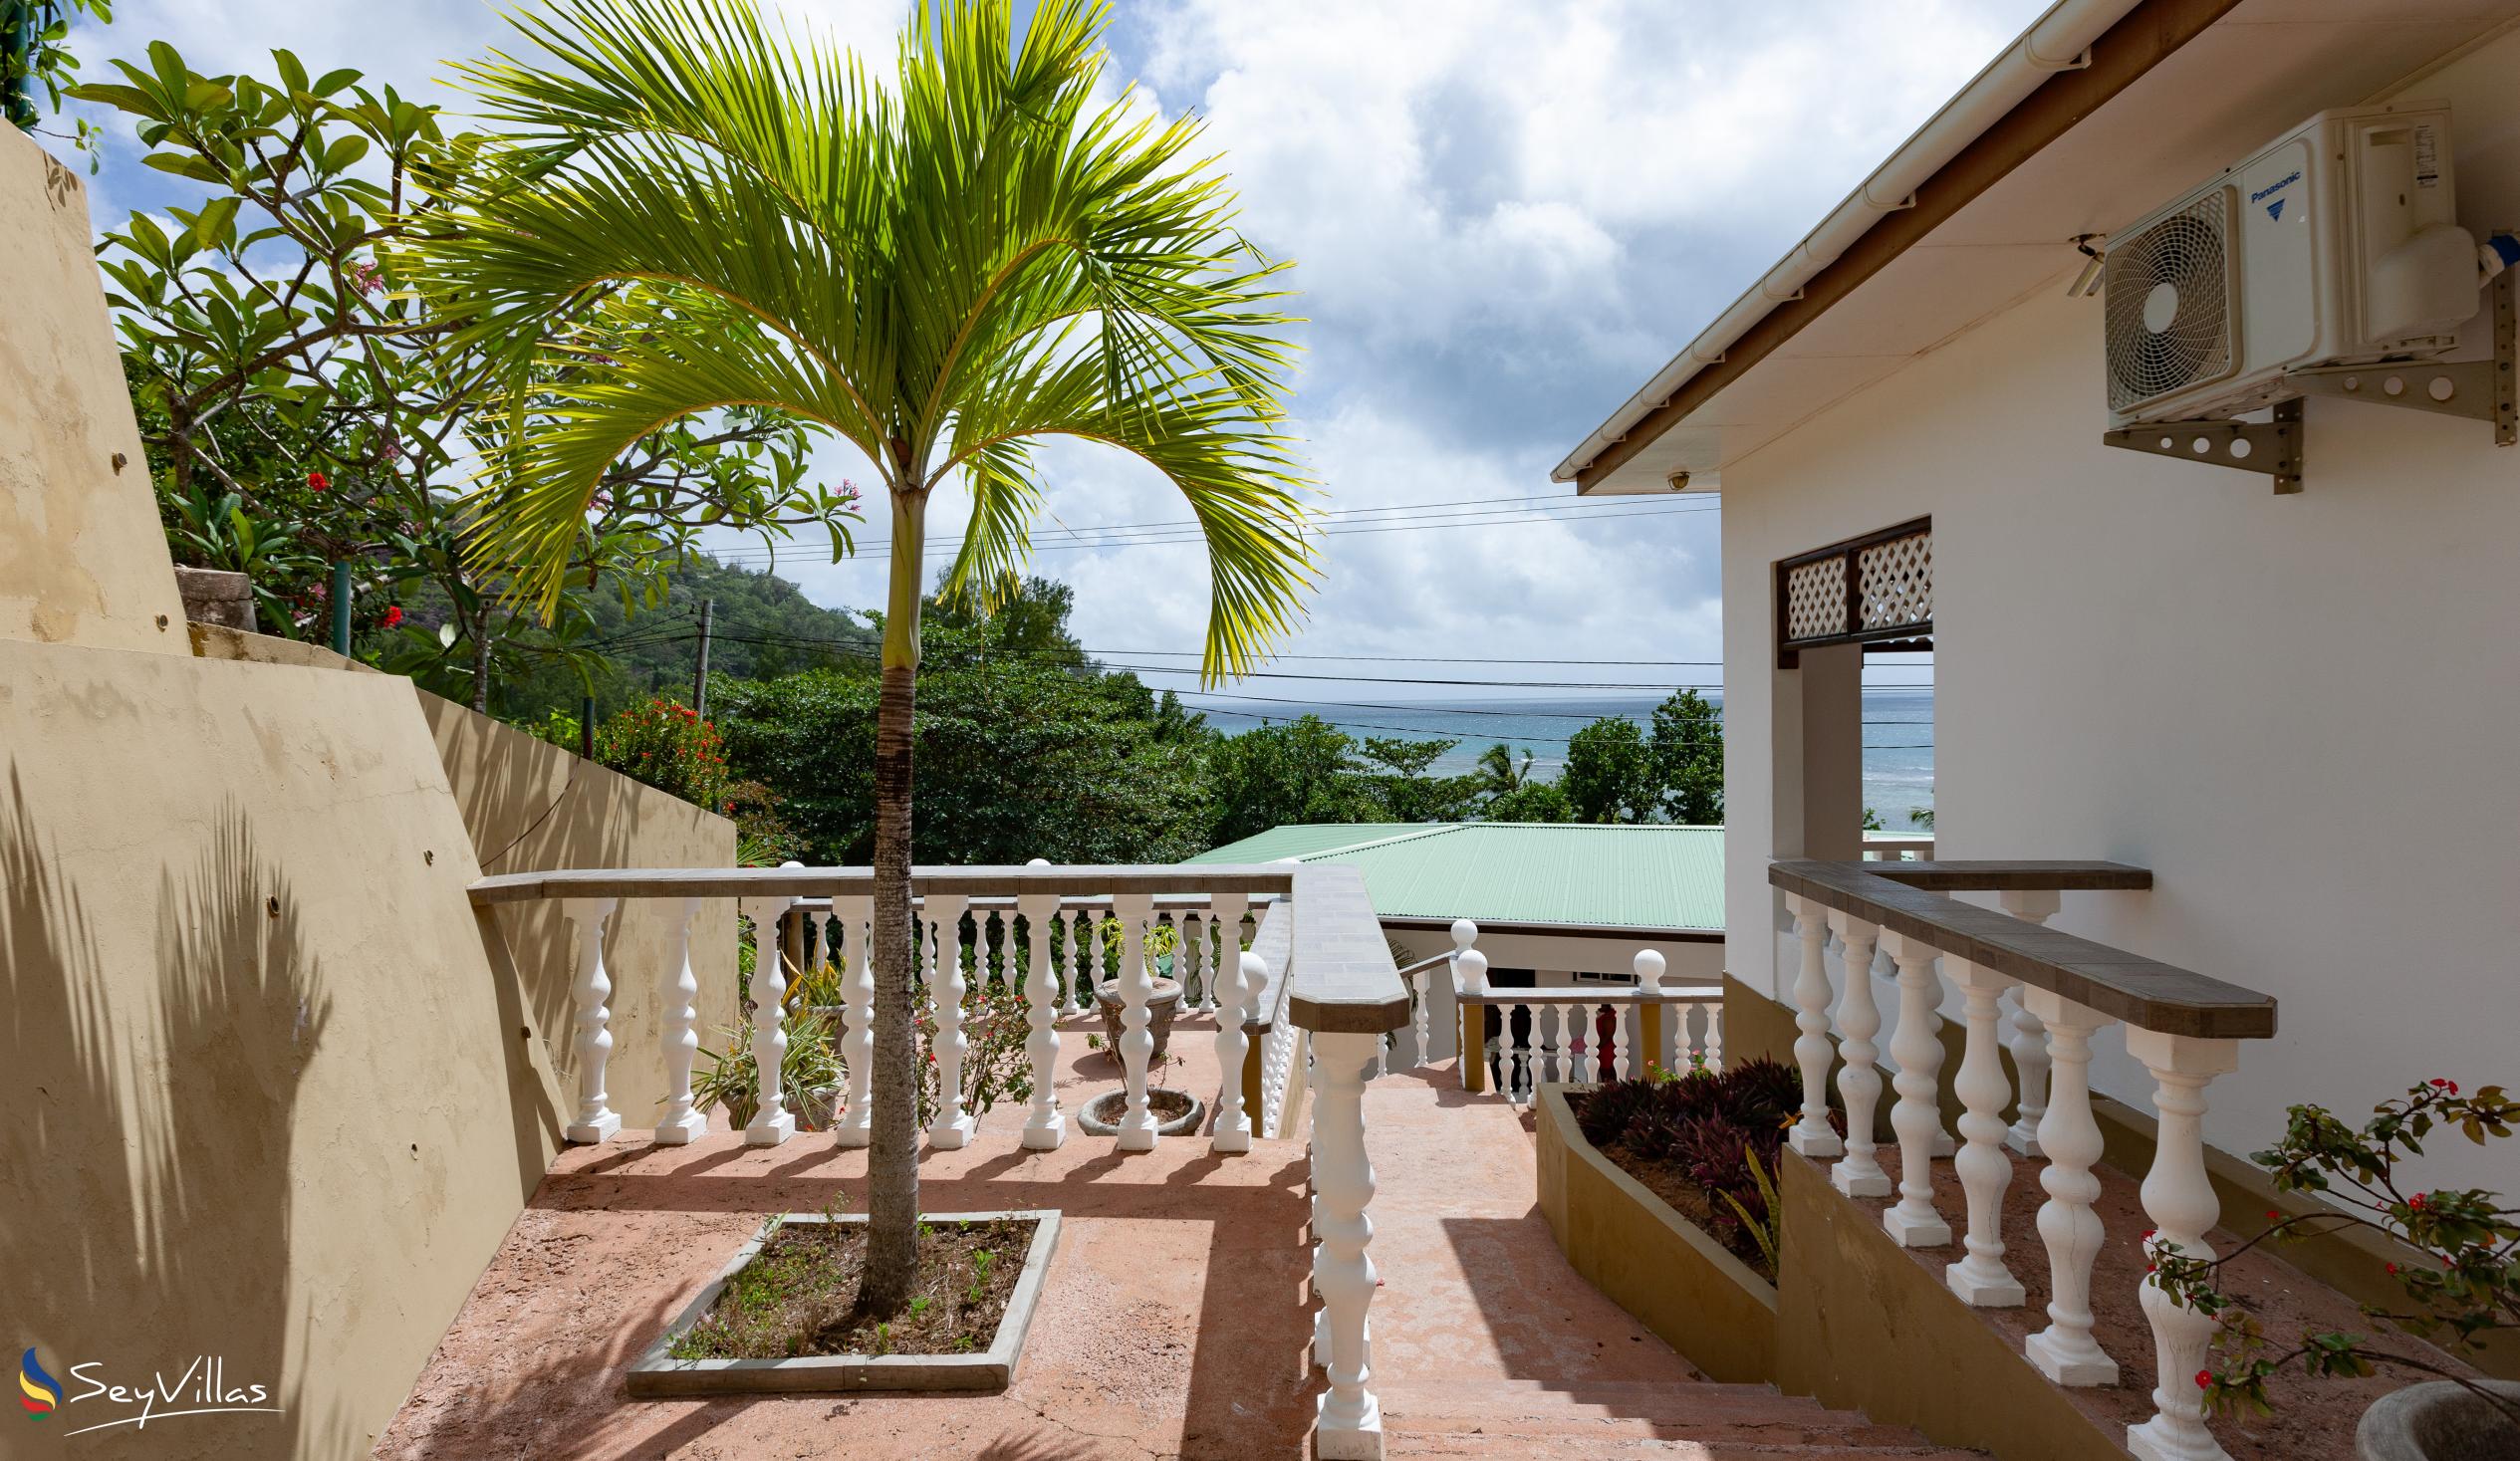 Foto 9: Villa Anse La Blague - Aussenbereich - Praslin (Seychellen)